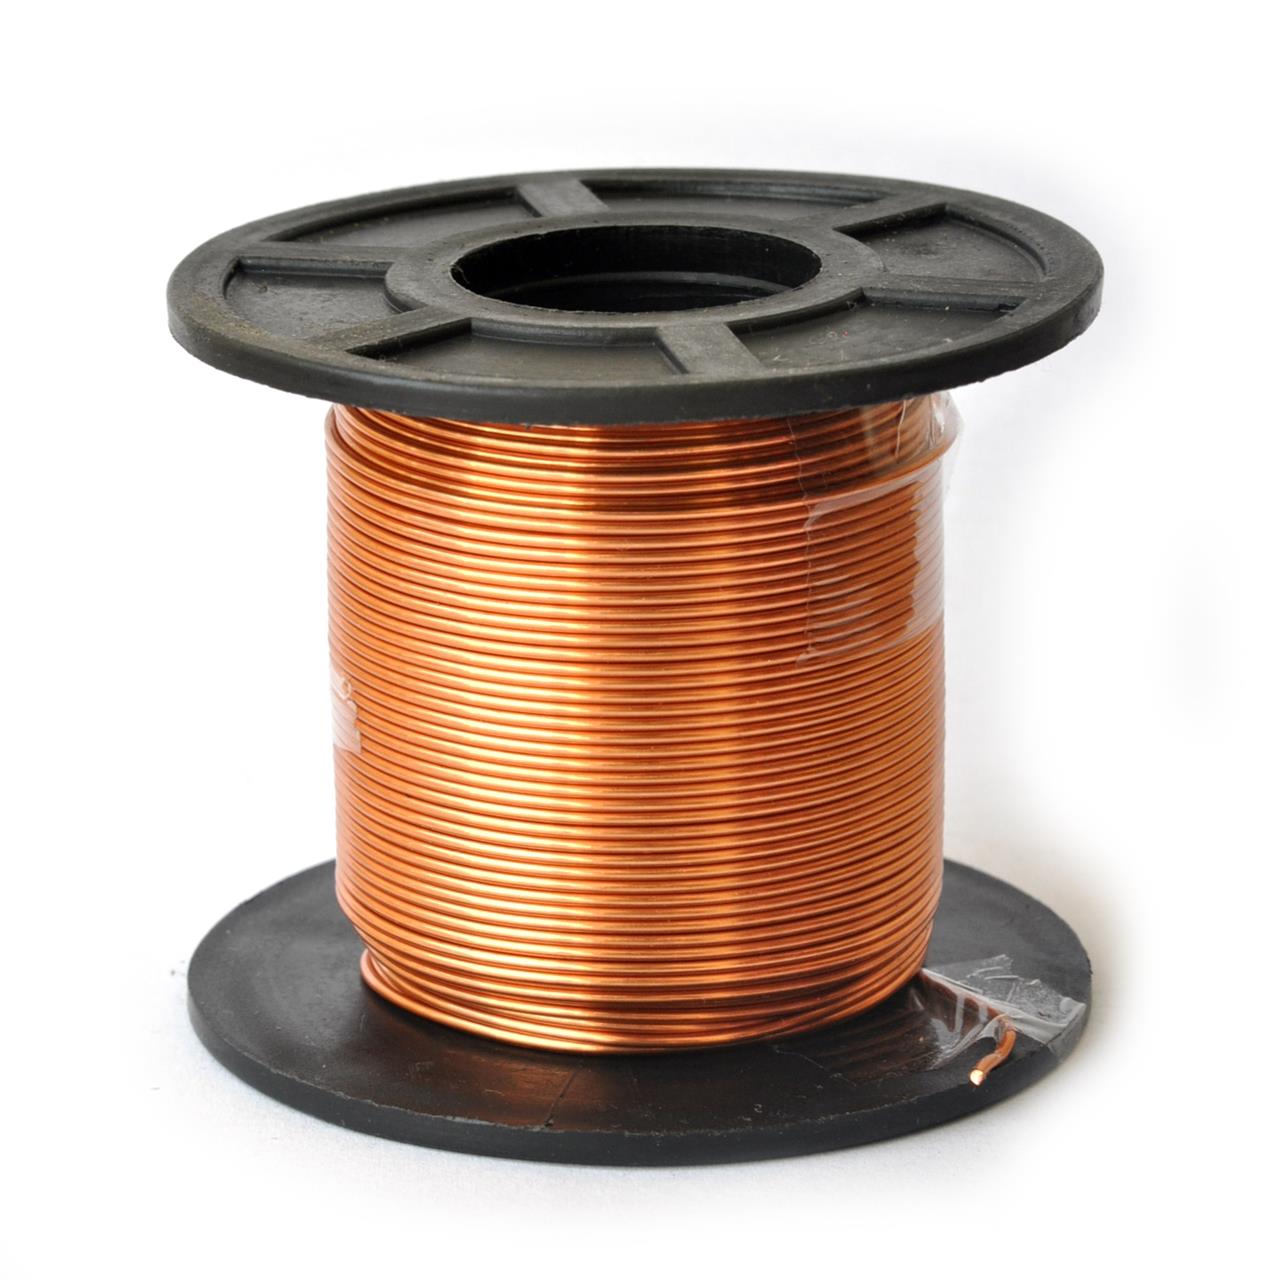 Fios de cobre esmaltados para bobinas, transformadores e indutores - Fio 19 AWG 250g